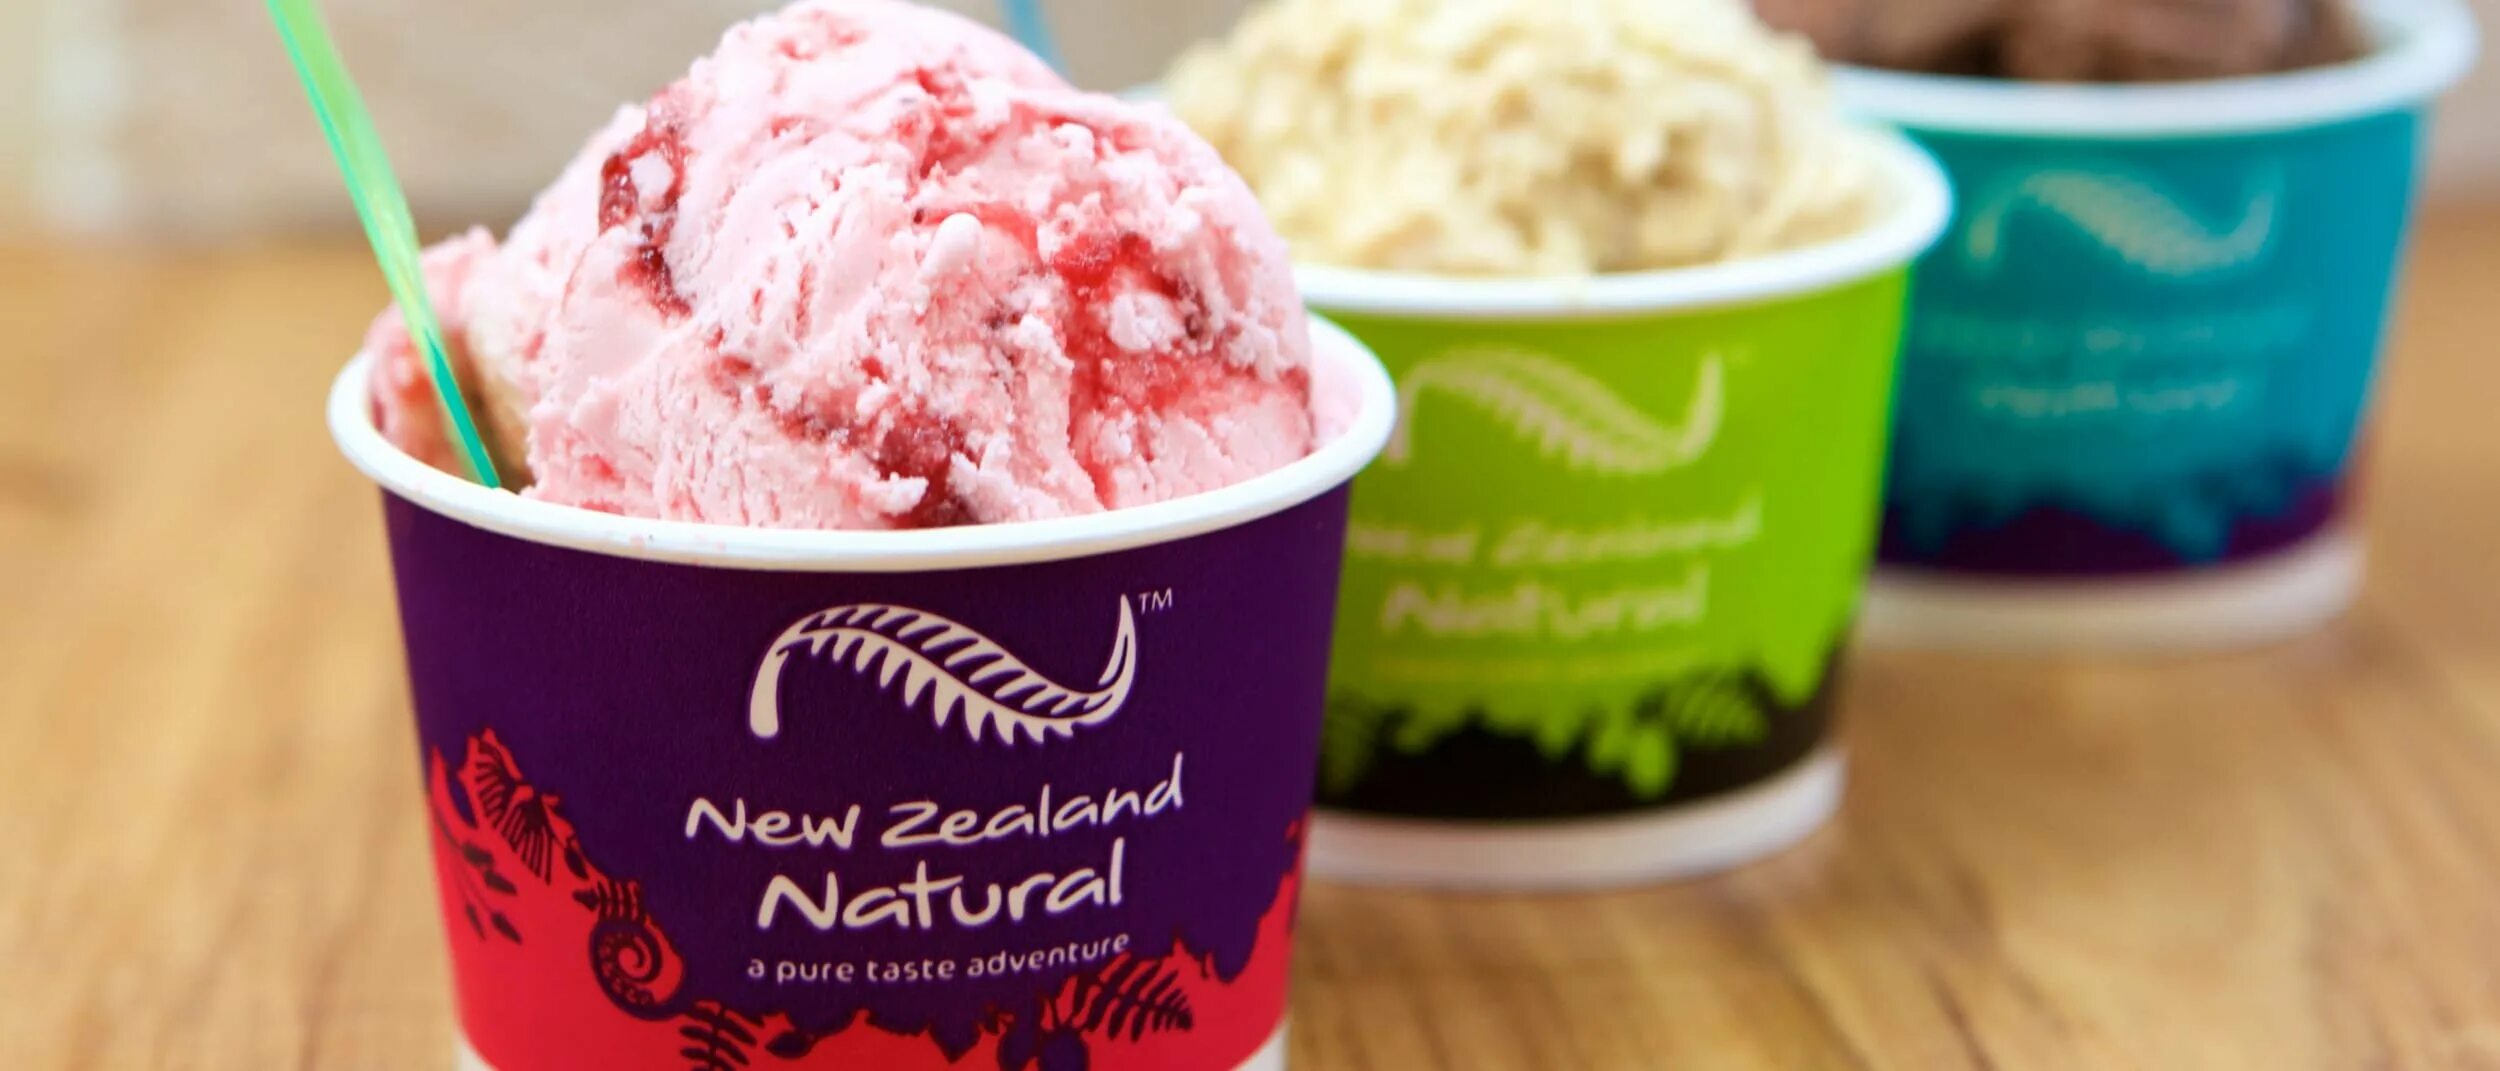 Новозеландское мороженое. Мороженое в ведре. Мороженое с пробиотиками.